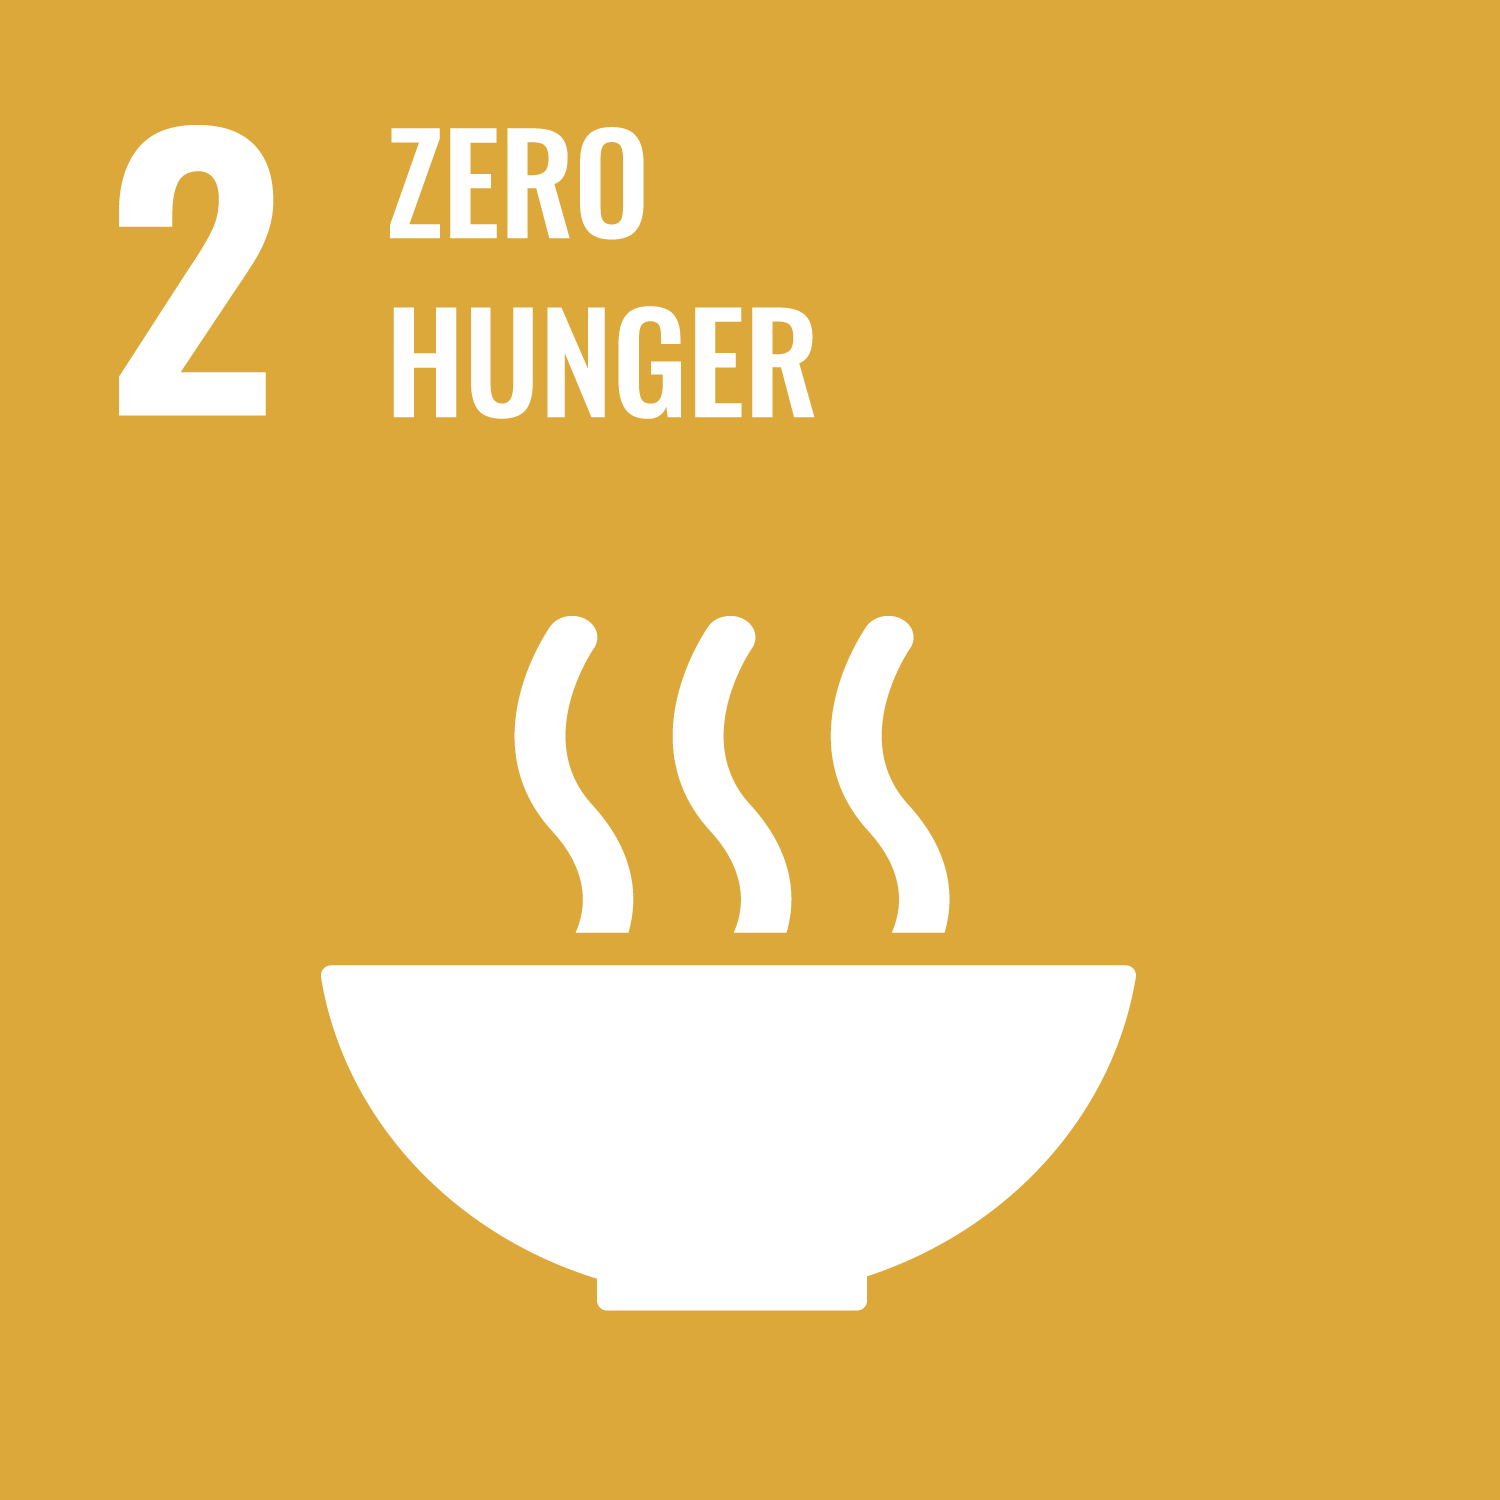 Goal 02 Zero Hunger